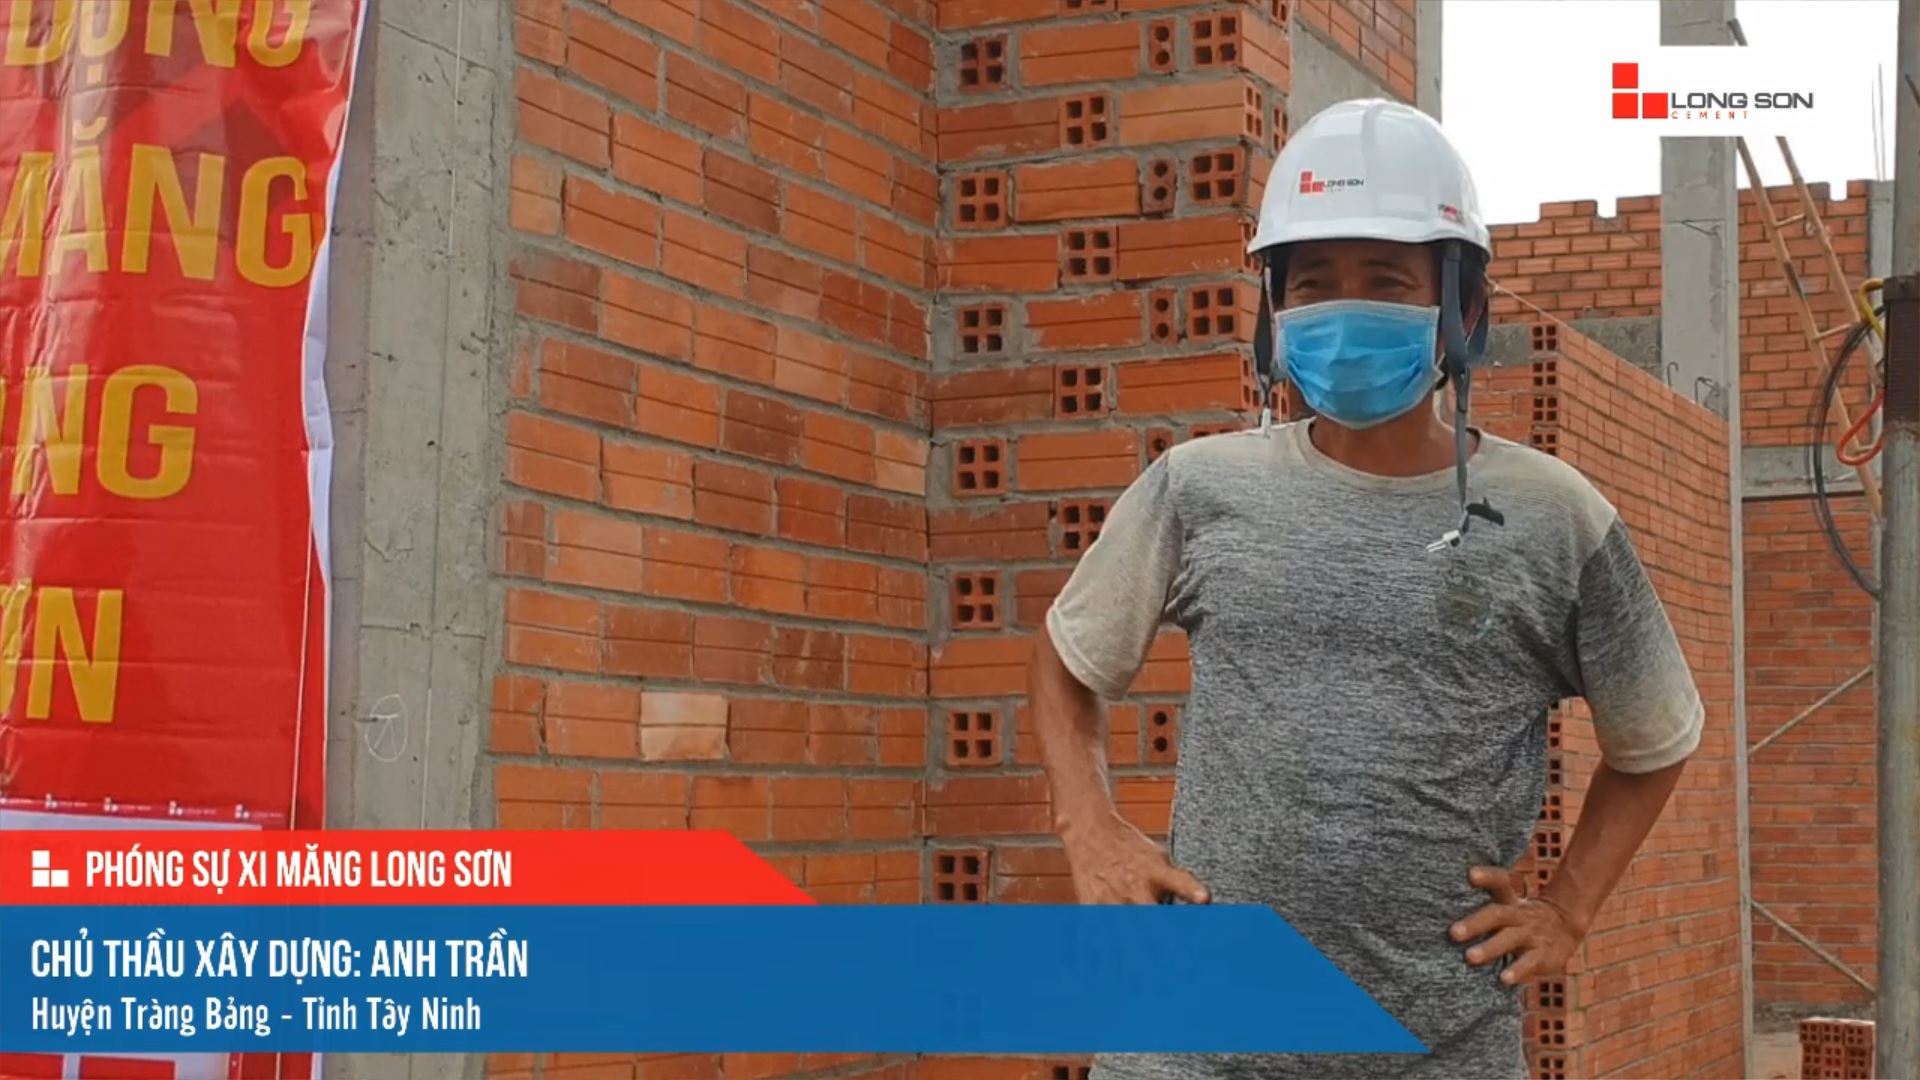 Phóng sự công trình sử dụng xi măng Long Sơn tại Tây Ninh ngày 10/11/2021